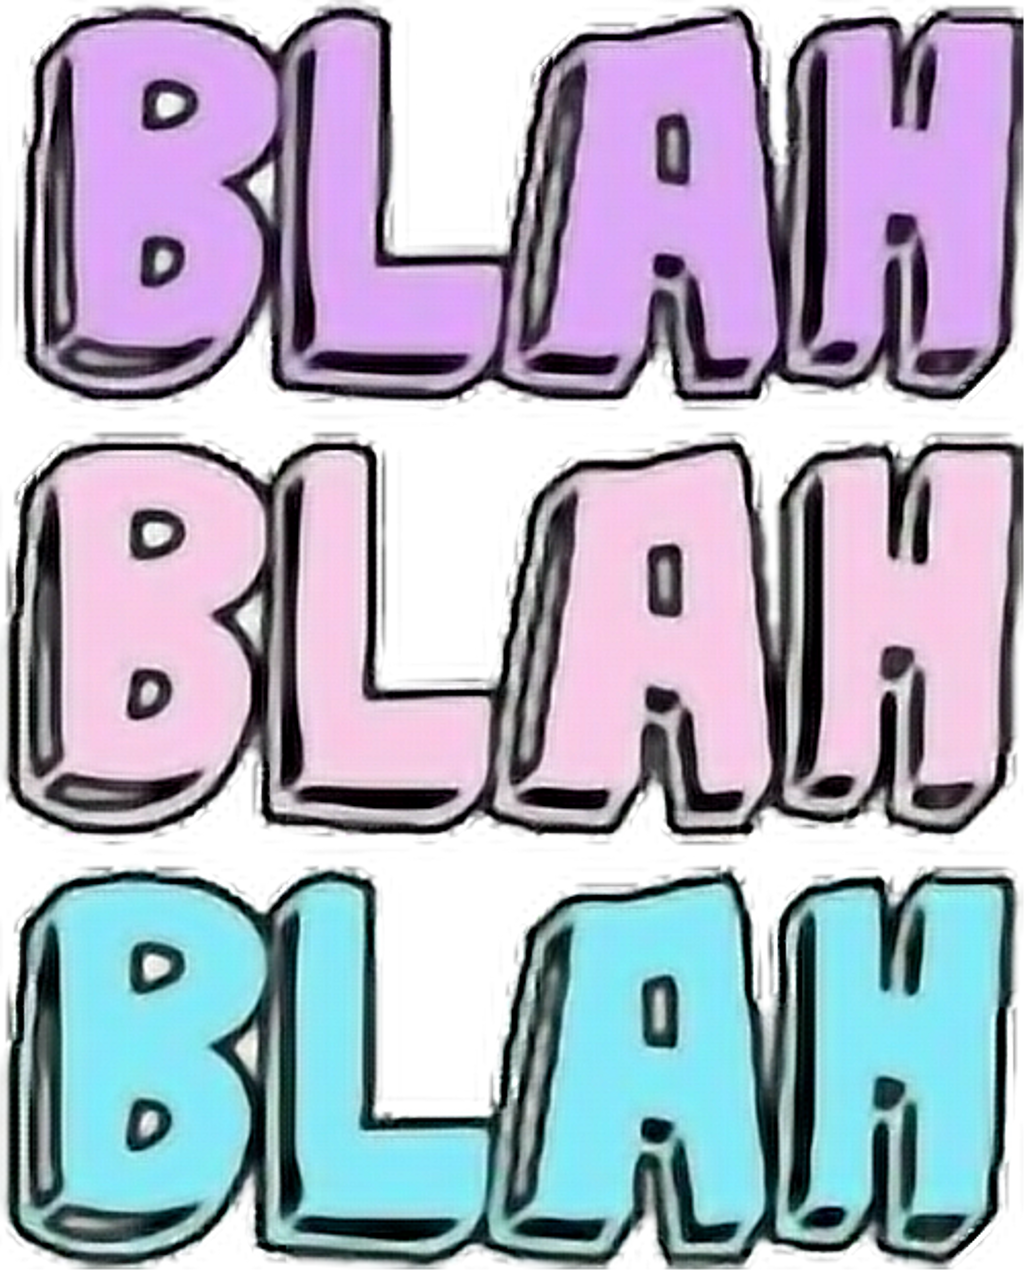 #blah Blah Blah - #blah Blah Blah (1024x1270)